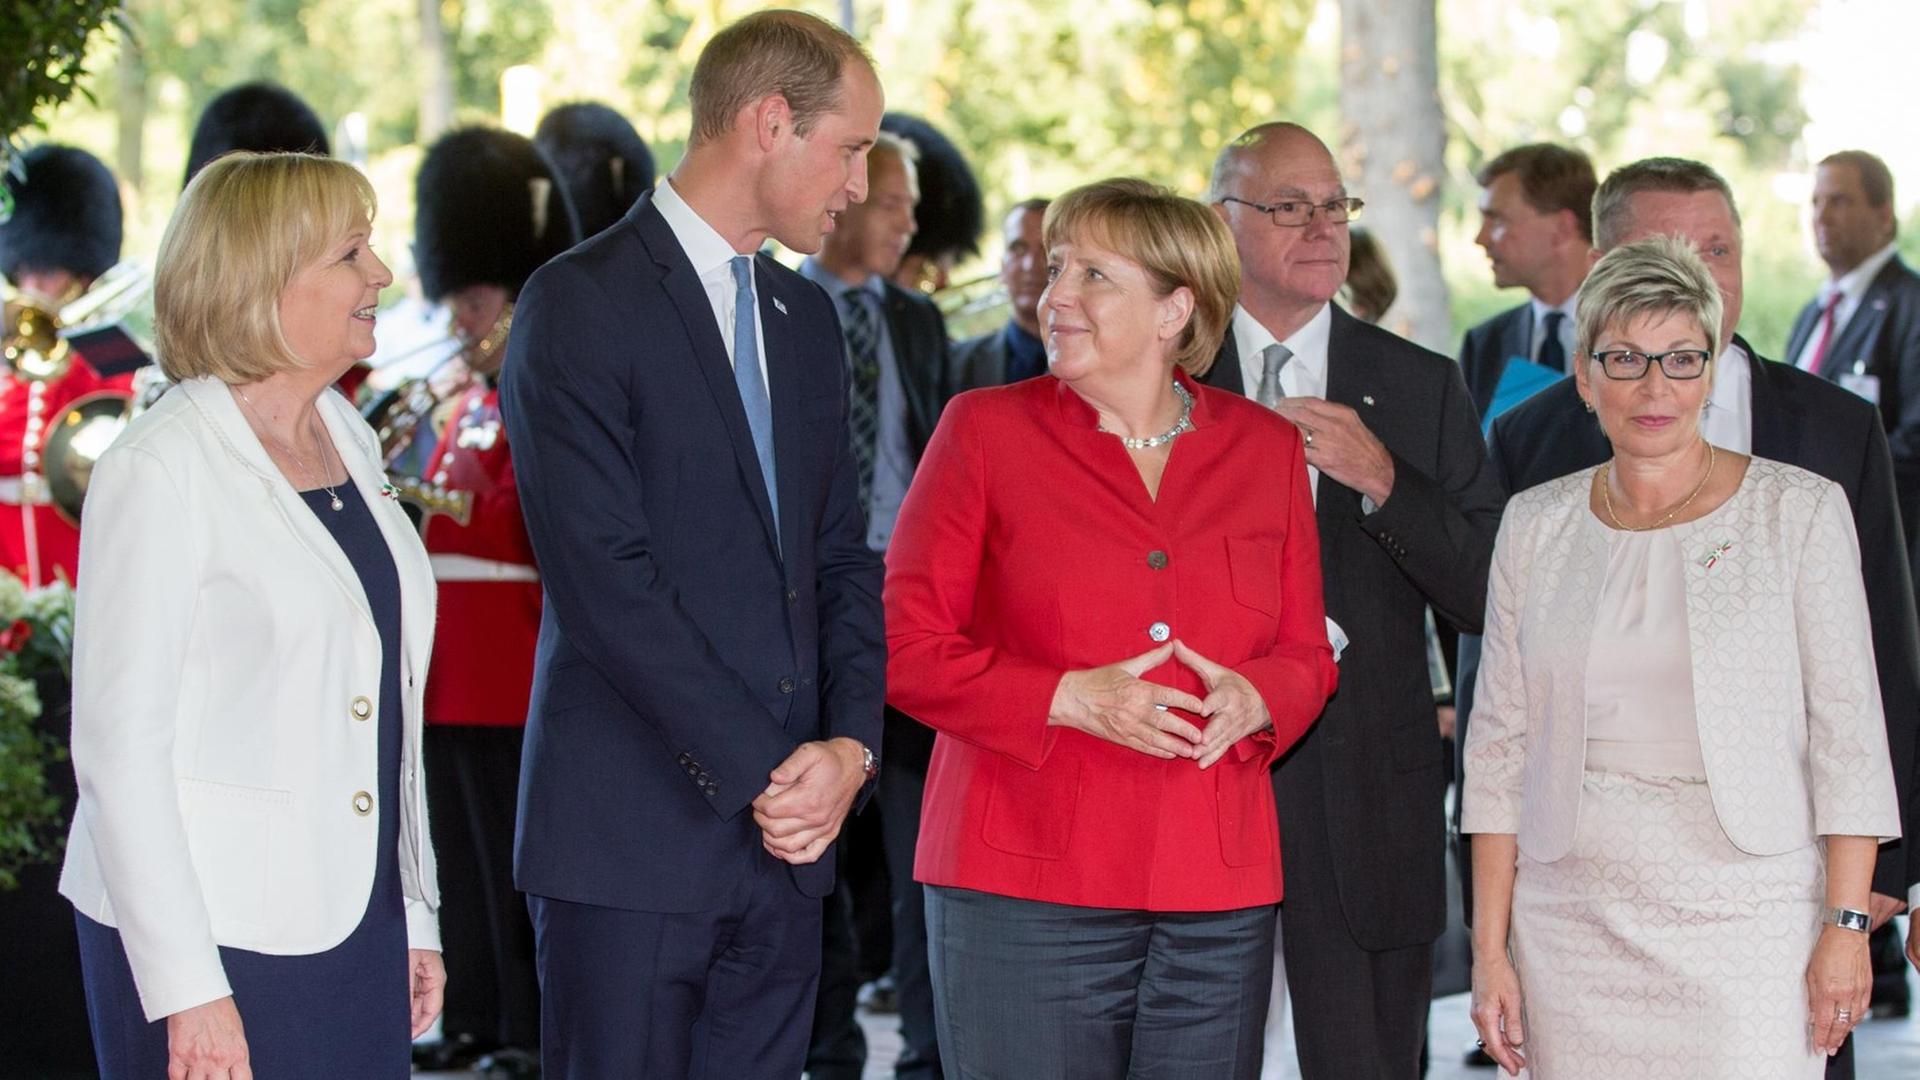 Die nordrhein-westfälische Ministerpräsidentin Hannelore Kraft (SPD, l-r), Prinz William von Großbritannien und Nordirland, Bundeskanzlerin Angela Merkel (CDU), und die Präsidentin des Landtags von NRW, Carina Gödecke, am Rande des Festakts zu 70 Jahren NRW.